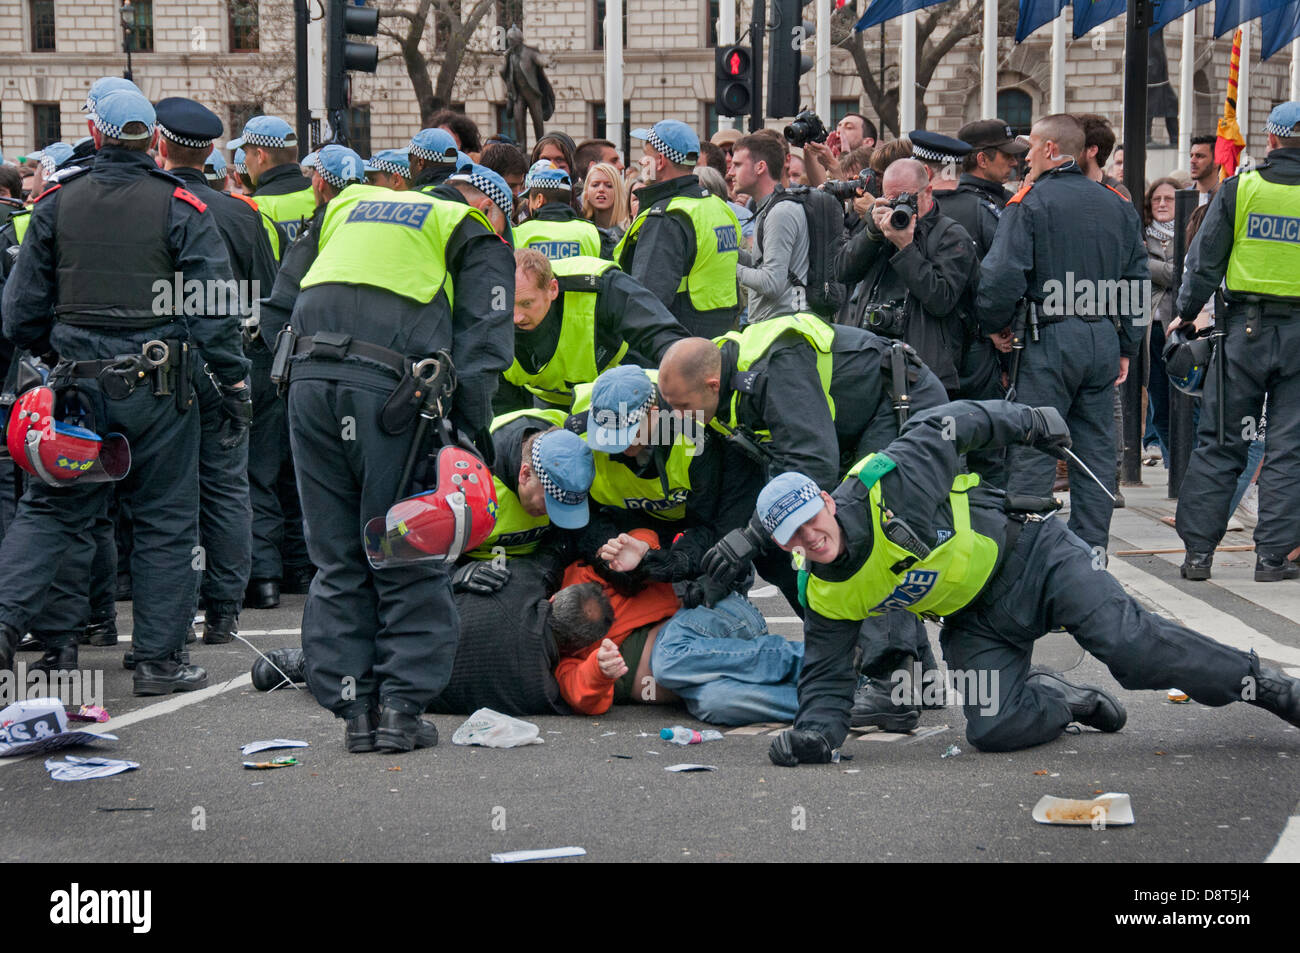 Les manifestants d'être arrêté après l'UAF s'unissent contre le fascisme une manifestation de protestation contre le BNP rassemblement dans Westminster. O Banque D'Images